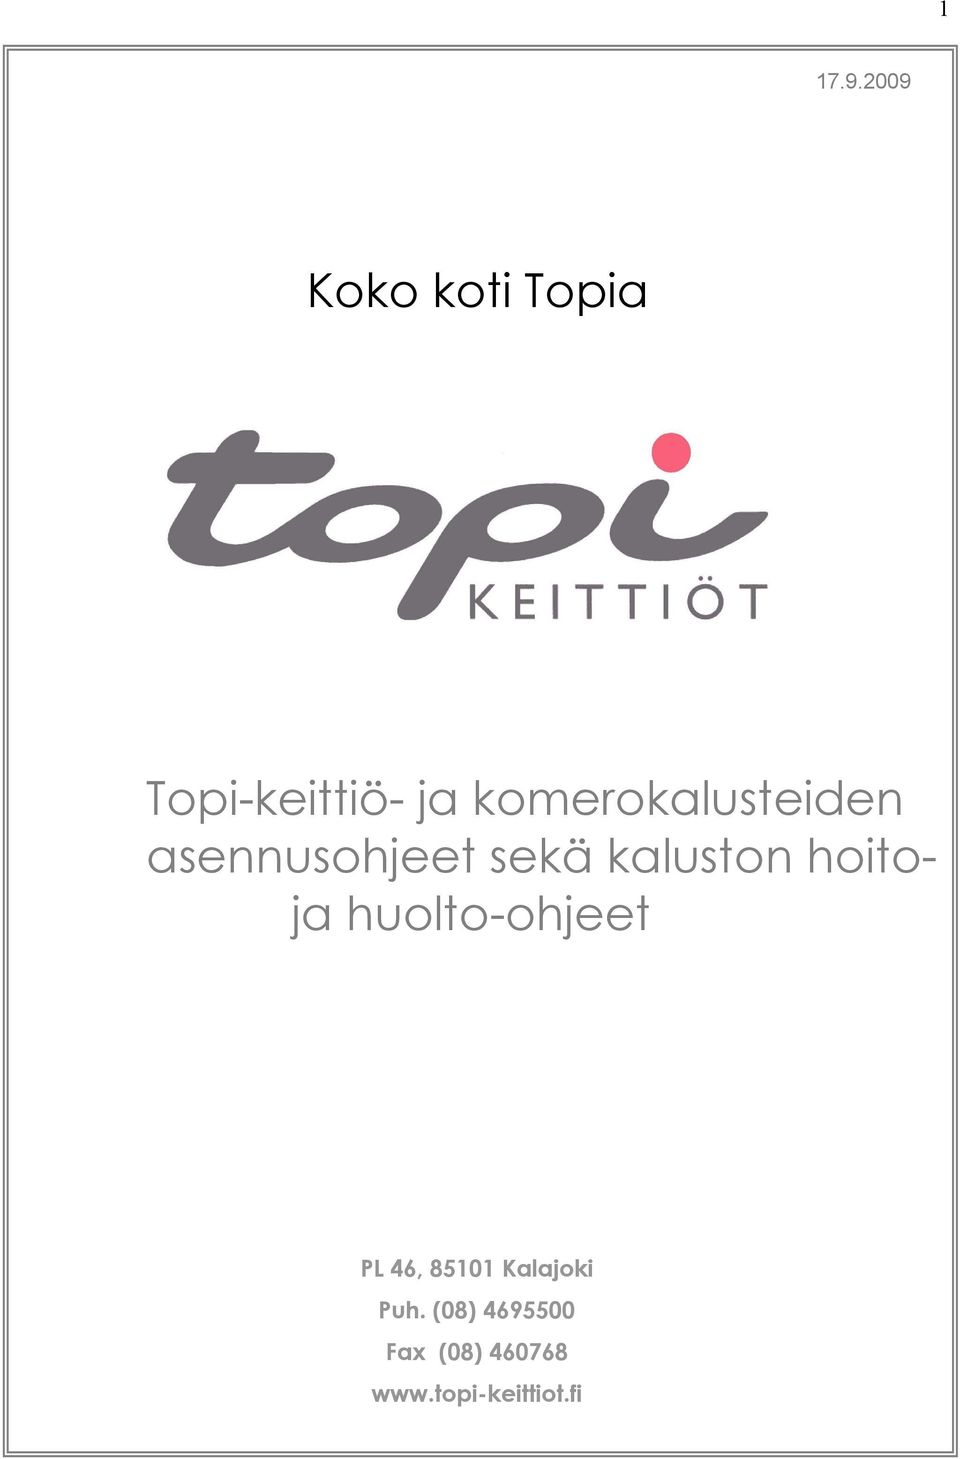 Koko koti Topia. Topi-keittiö- ja komerokalusteiden asennusohjeet sekä  kaluston hoitoja huolto-ohjeet - PDF Ilmainen lataus